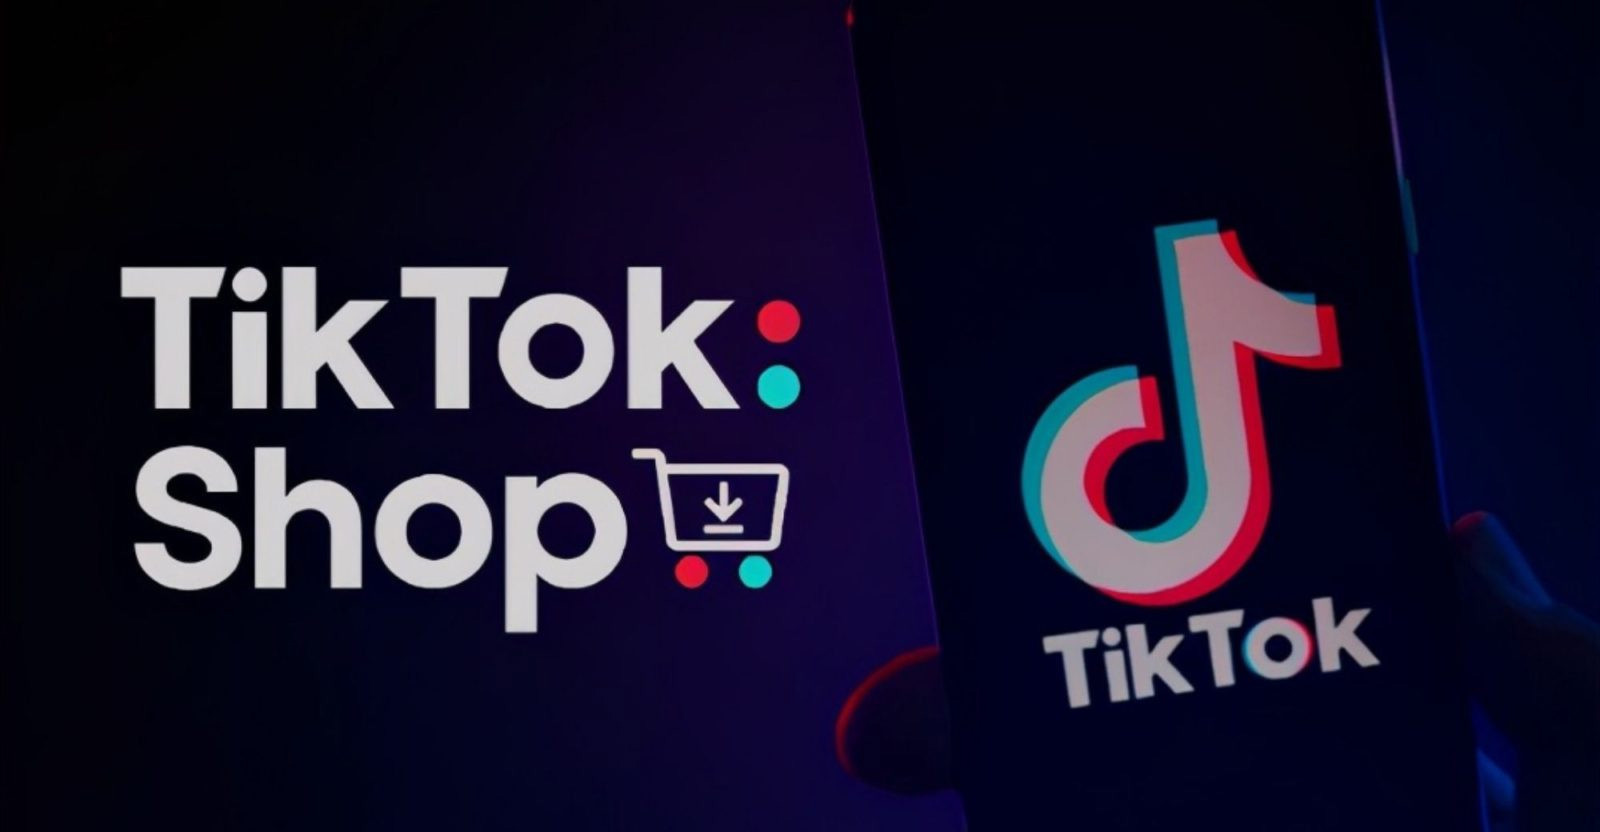 Bí quyết giúp doanh nghiệp tăng tốc kinh doanh trên Tik Tok Shop